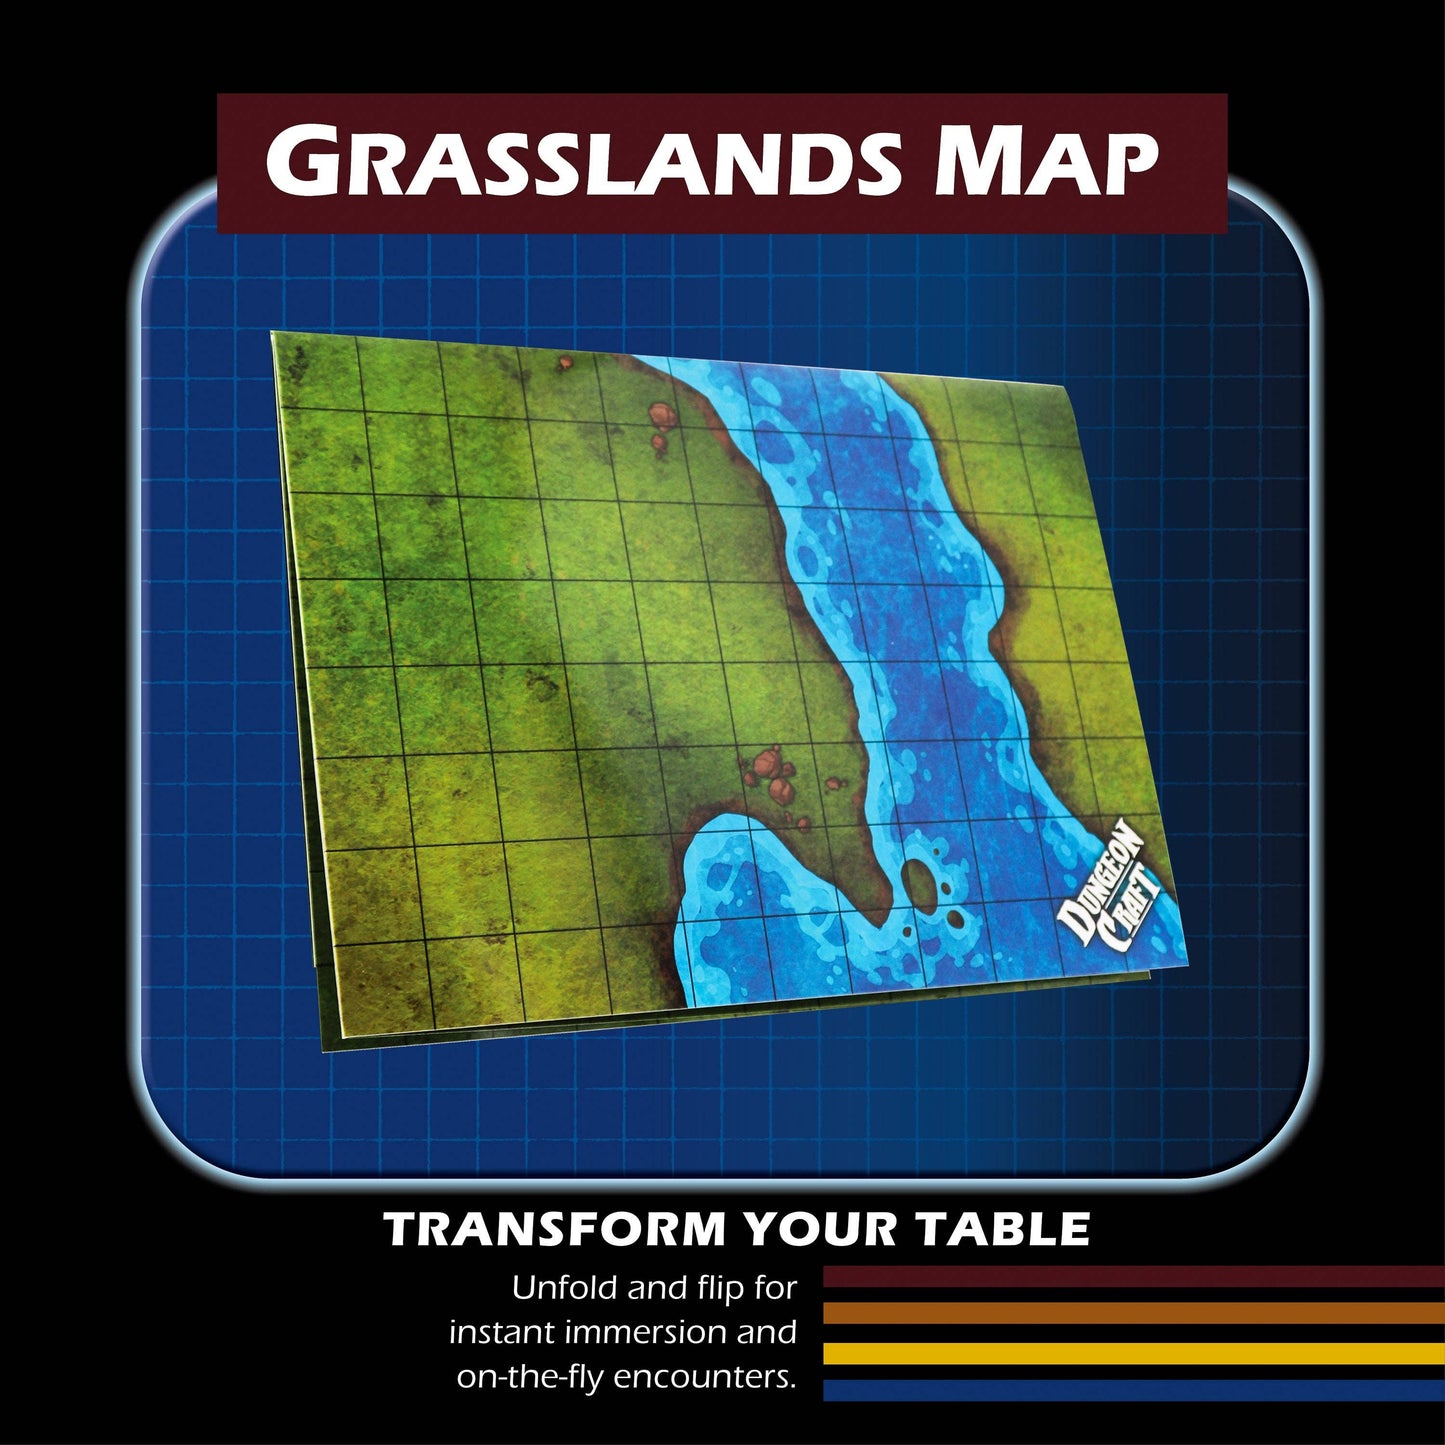 BattleMap: Grasslands battle map for DnD